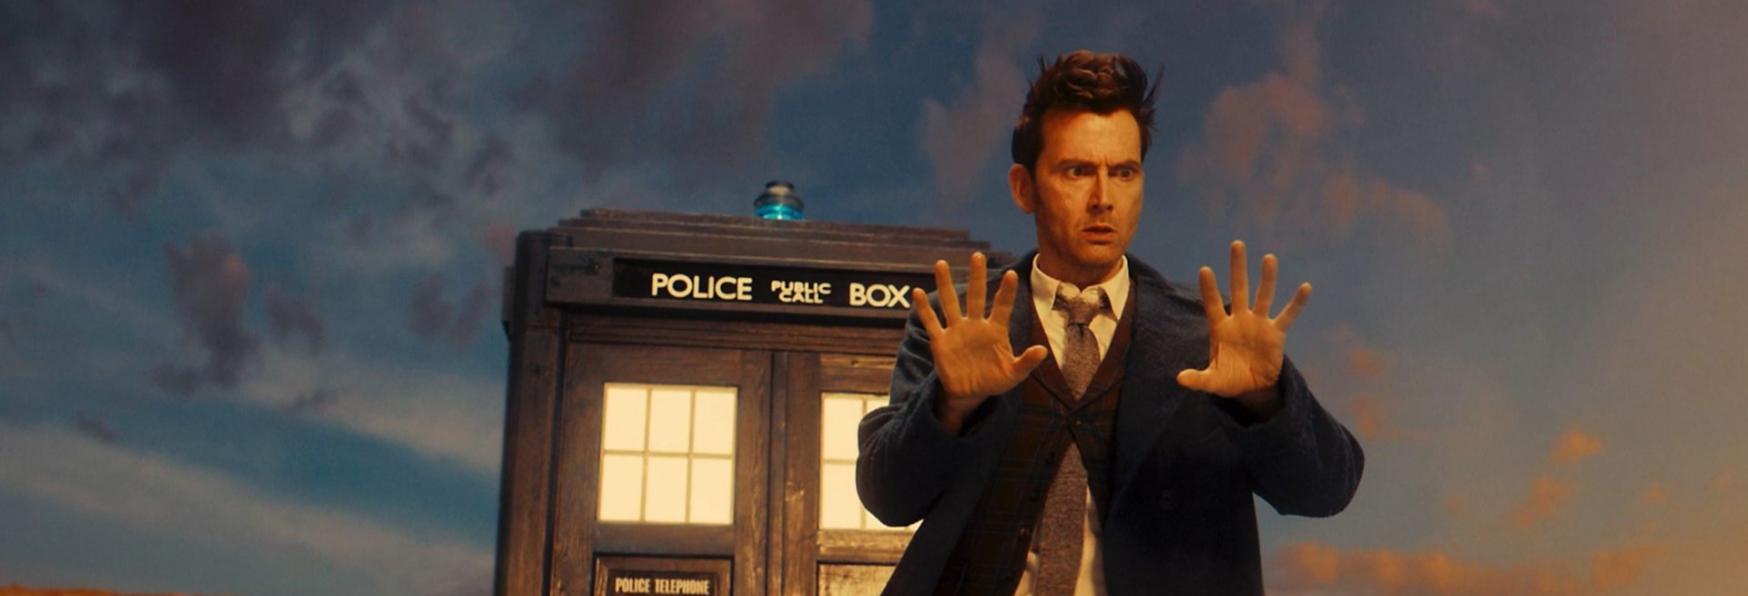 Doctor Who 14: Iniziate le Riprese della Stagione inedita. Ecco la Foto dal Set